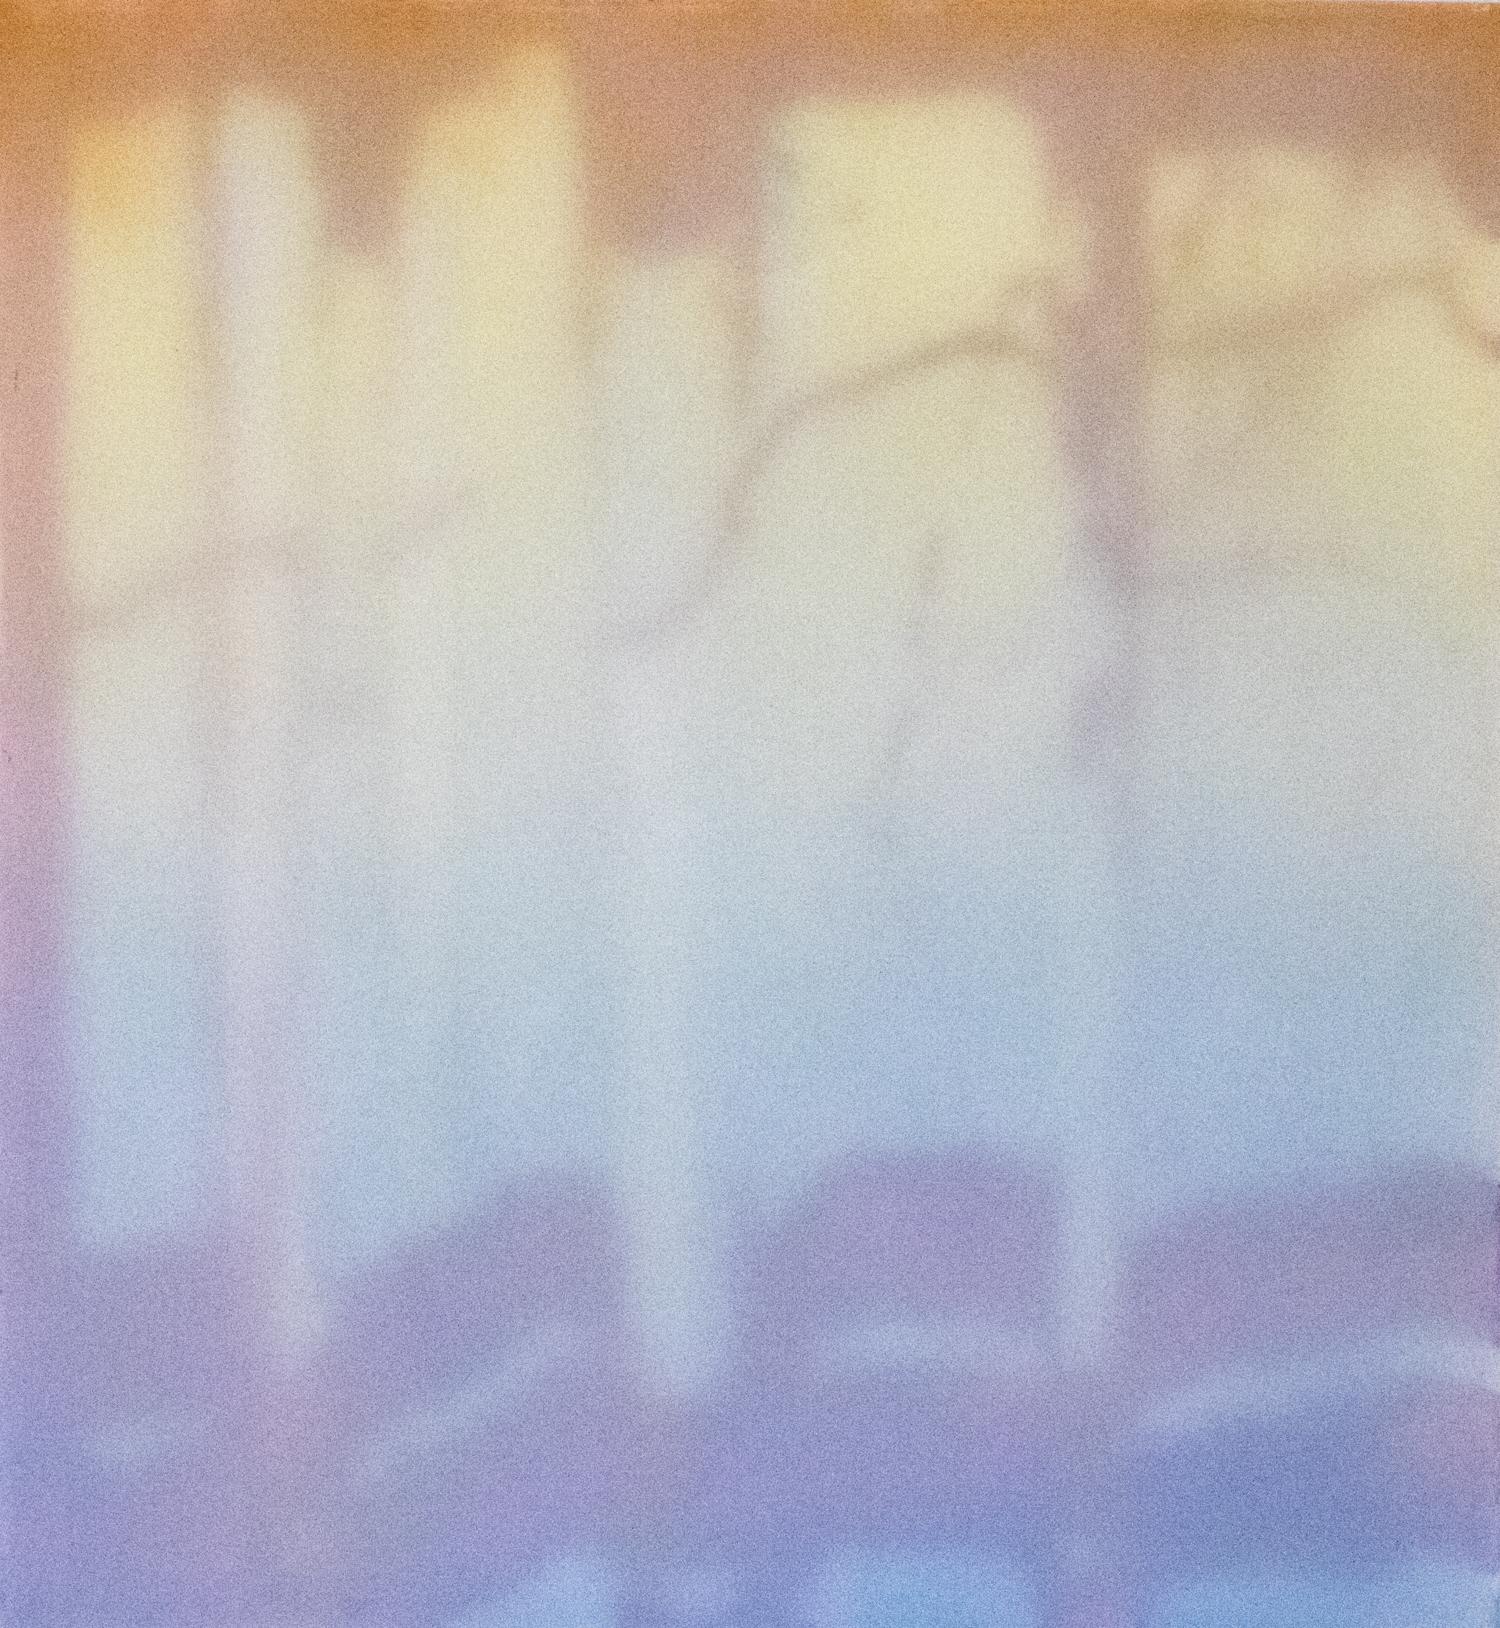 Heather Hartman - Peinture technique mixte - fenêtre VI - huile sur polyester et papier